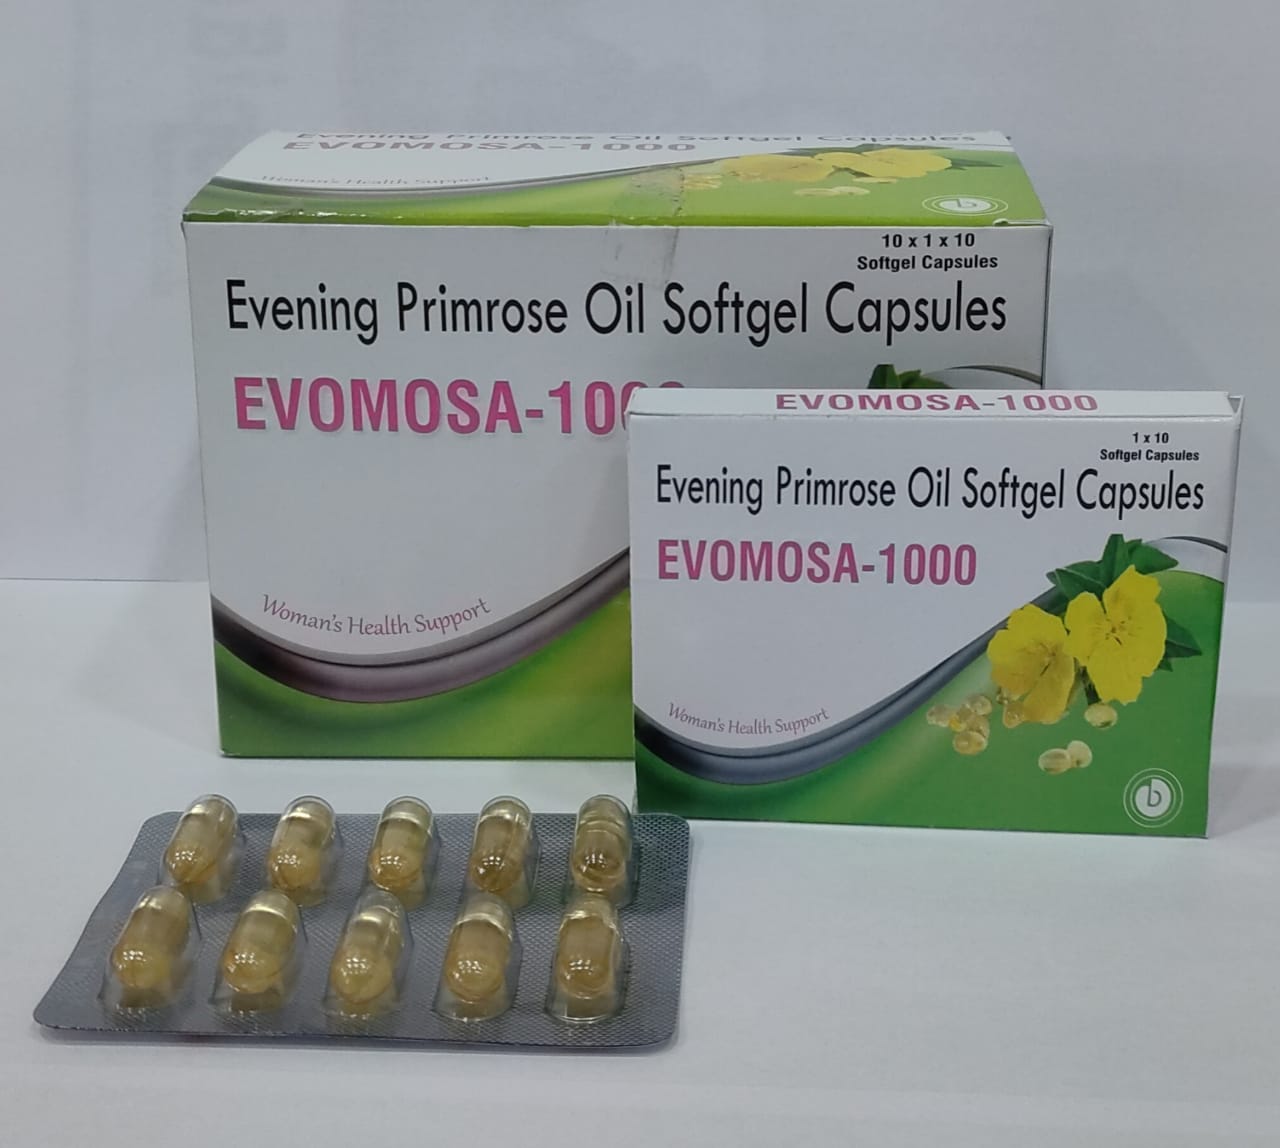 EVOMOSA 1000 Soft Gelatin Capsules